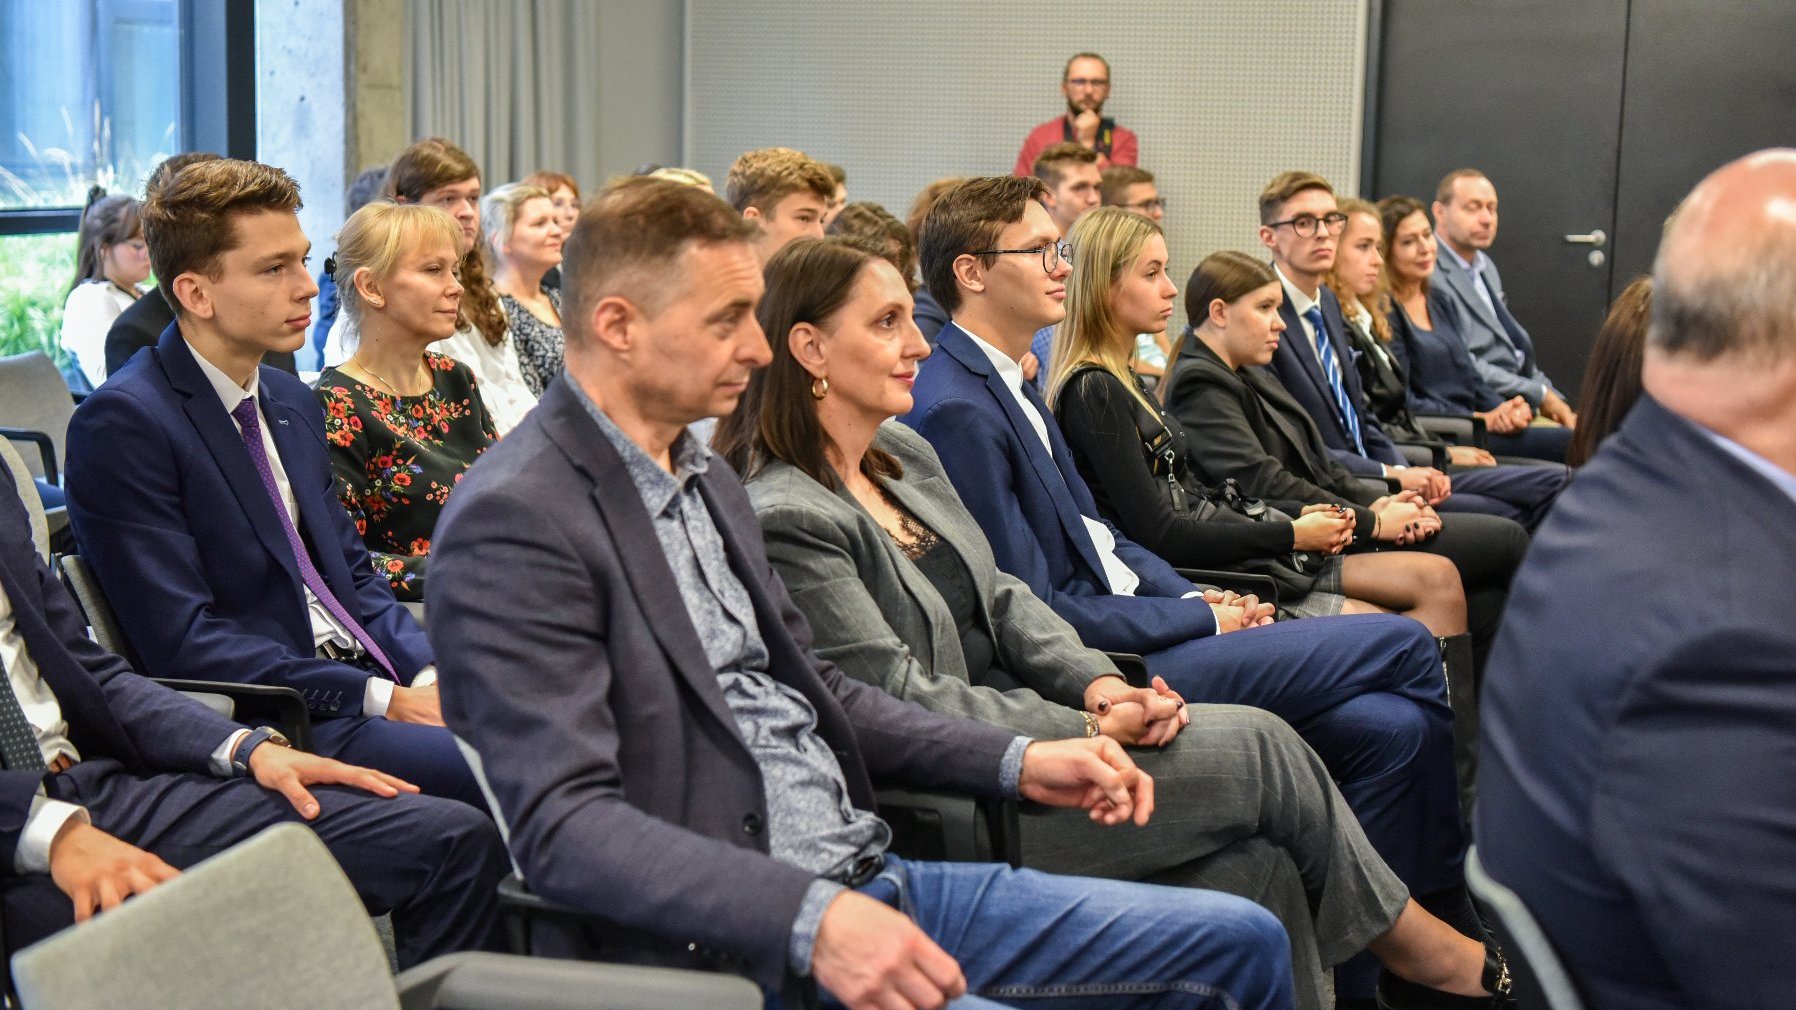 Zdjęcie przedstawia grupę osób siedzących na widowni w sali konferencyjnej